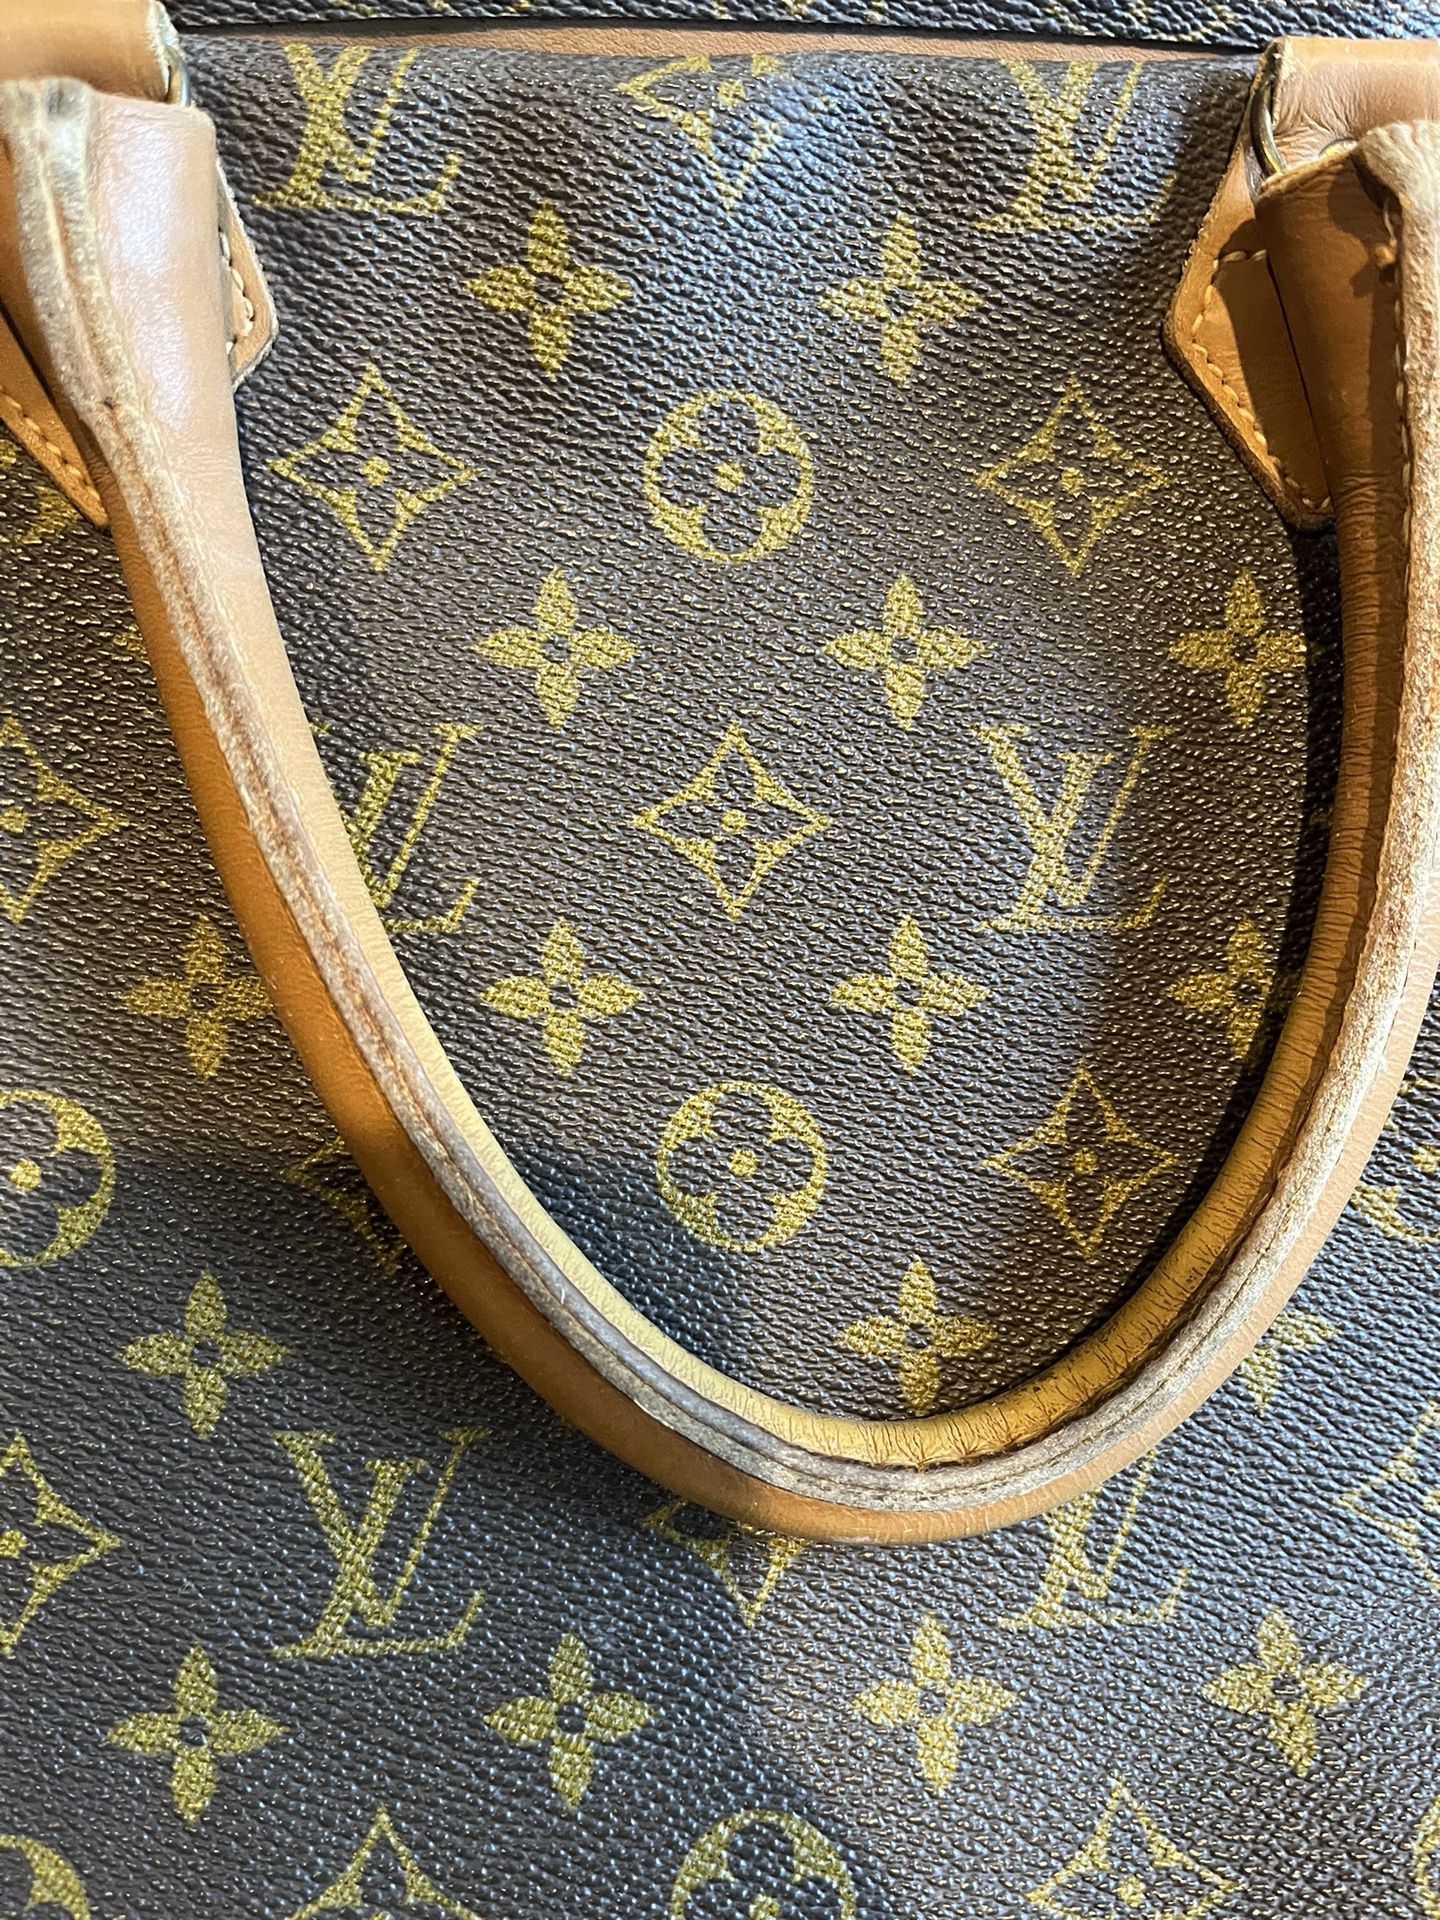 Authentic Louis Vuitton Vintage bag